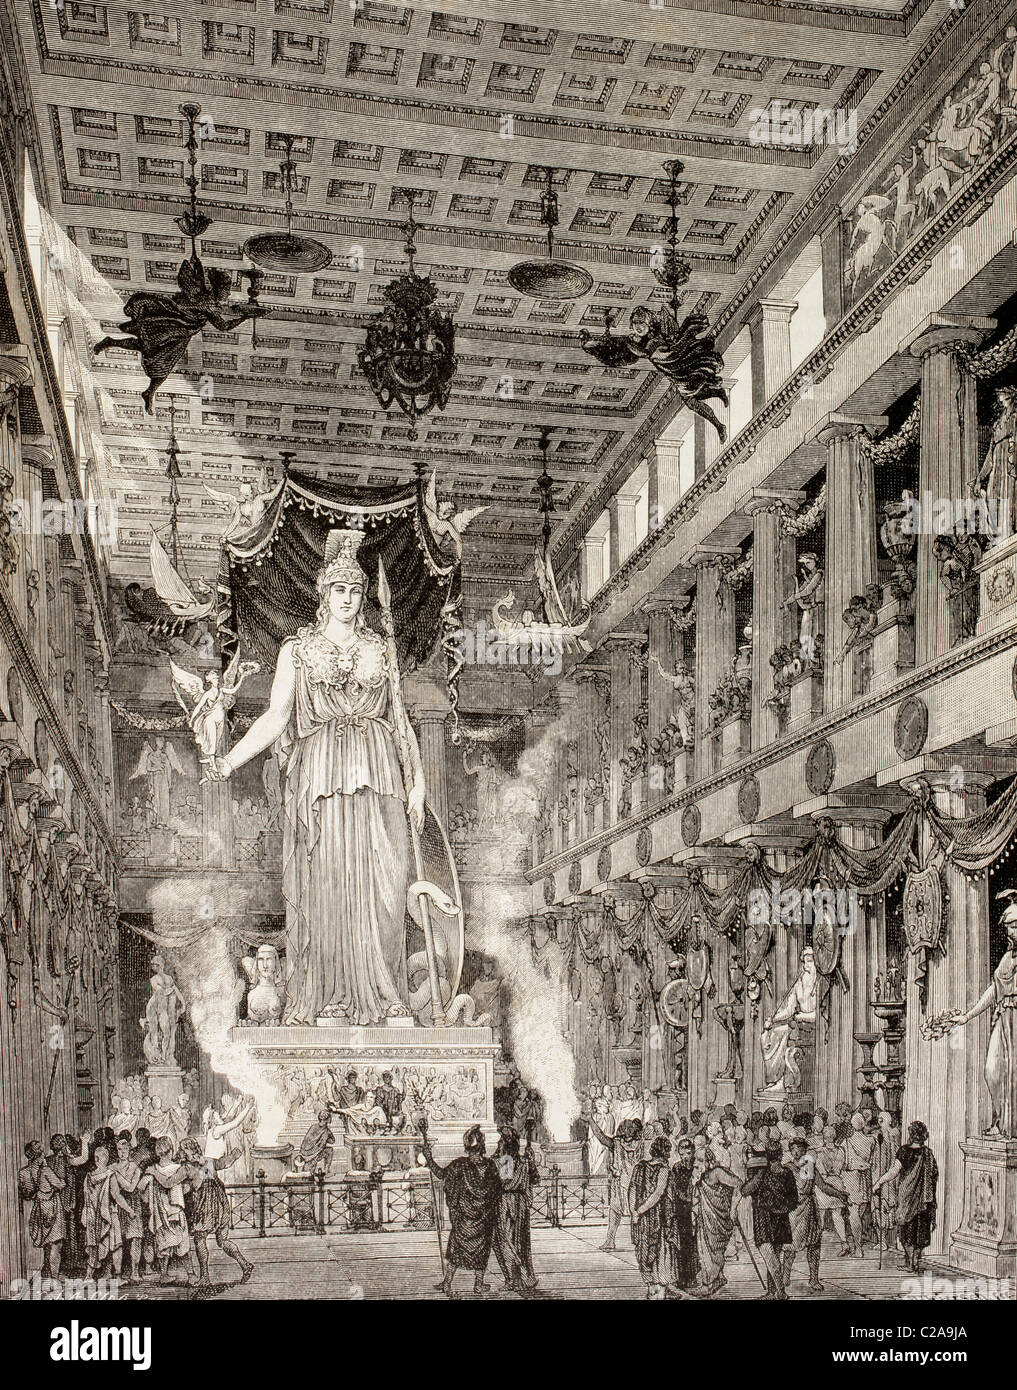 Impression d'artiste du Parthénon, Athènes, Grèce, au cours de la période classique. Statue de la déesse Athéna, centre. Banque D'Images